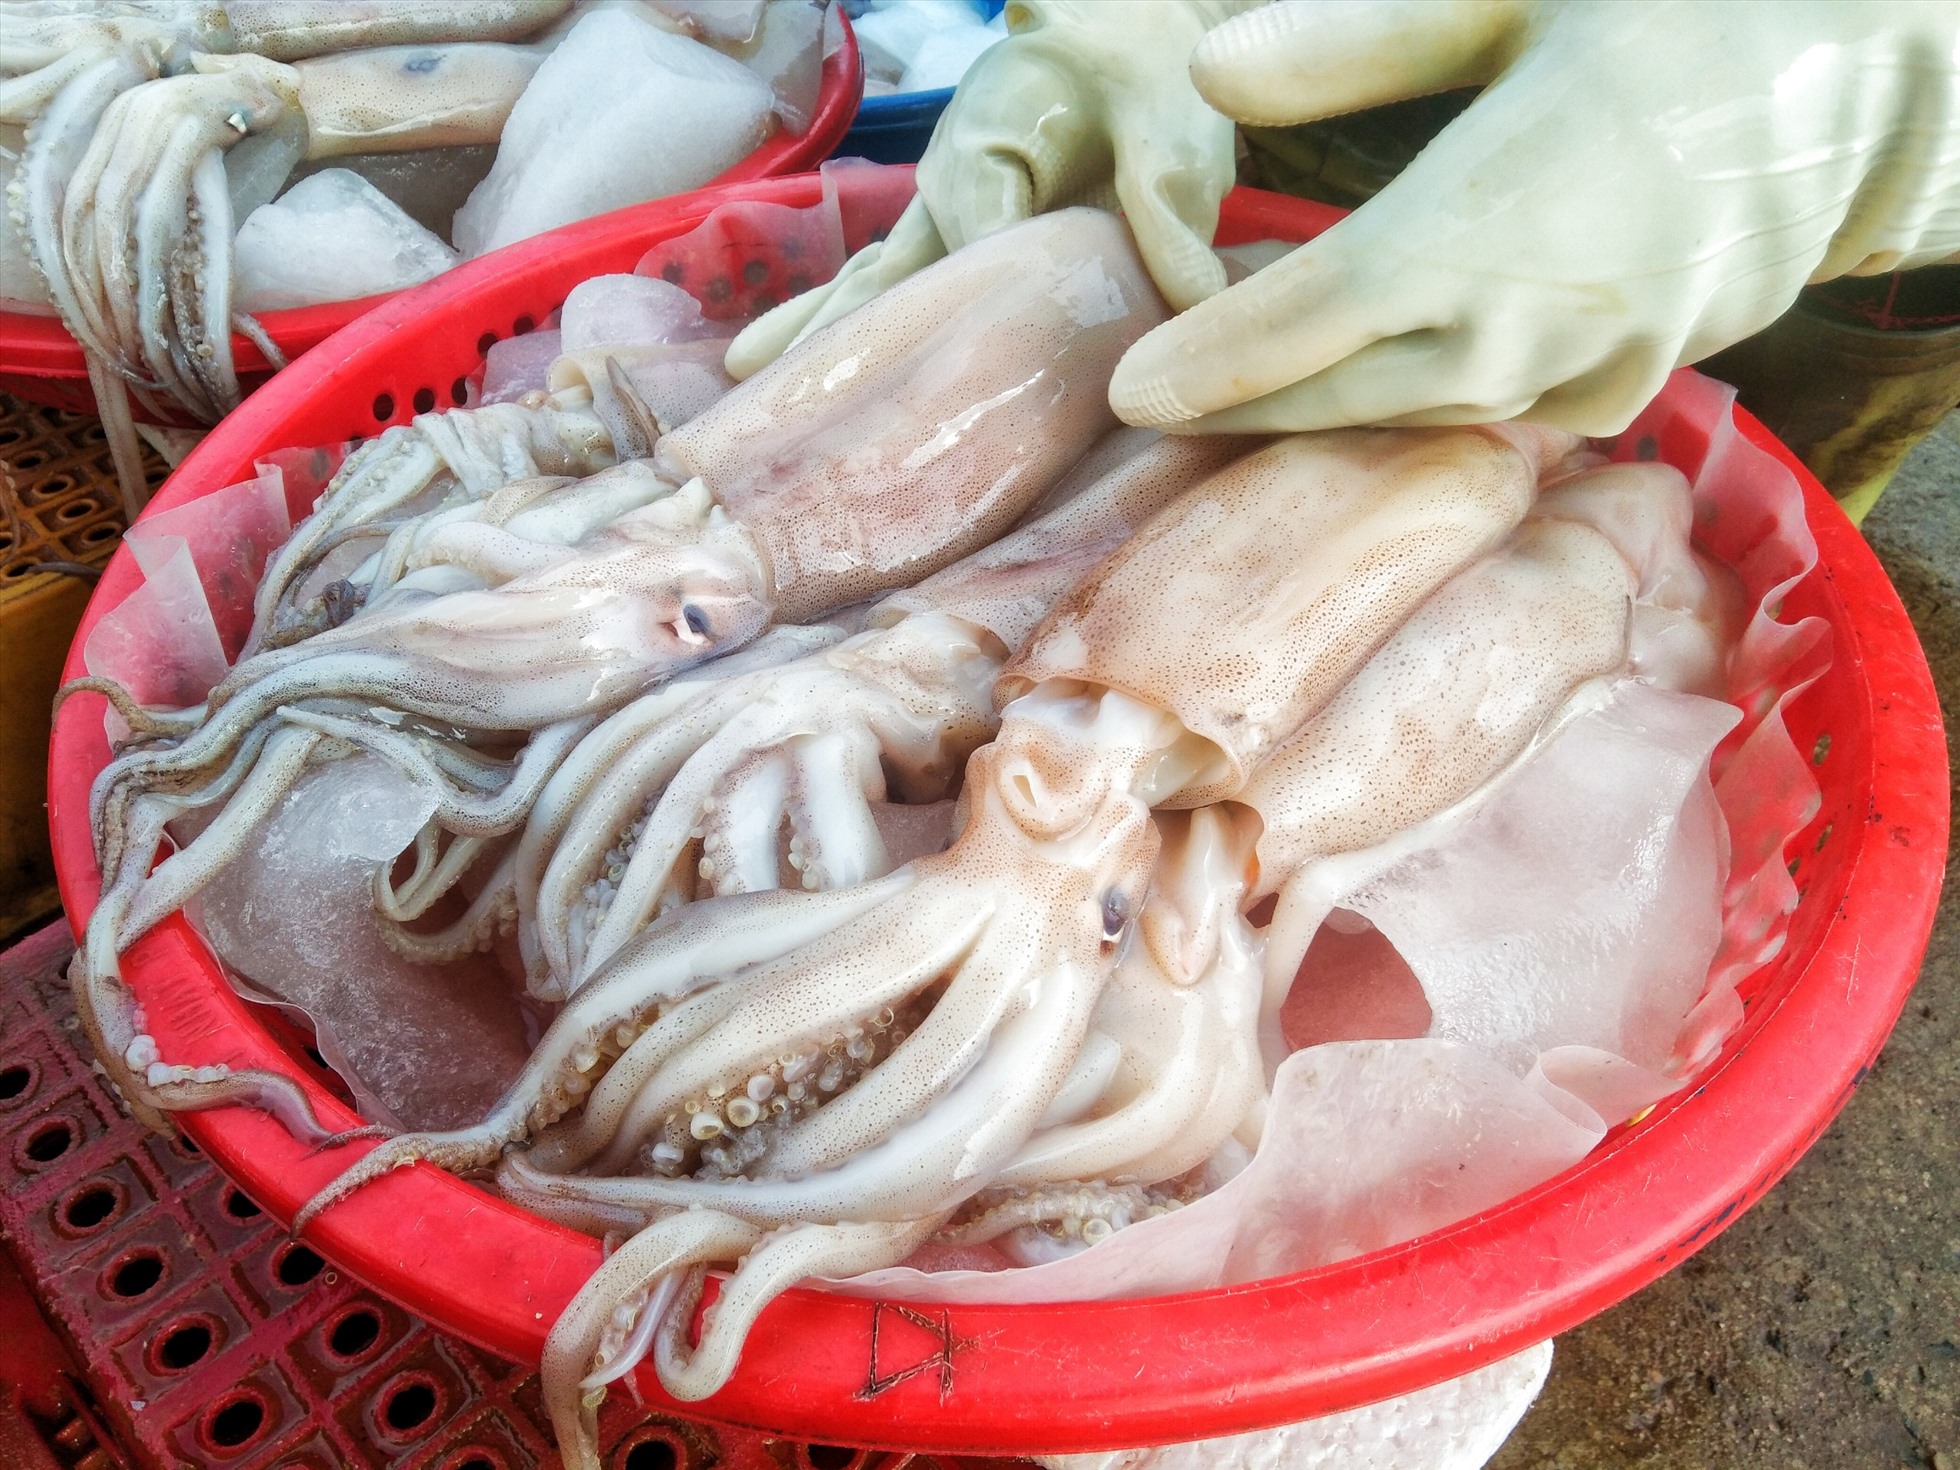 Những mẻ lưới đầy ắp hải sản được ngư dân đem bán tại khu chợ Gú (thị trấn Diêm Điền, huyện Thái Thụy). Ảnh: Lương Hà